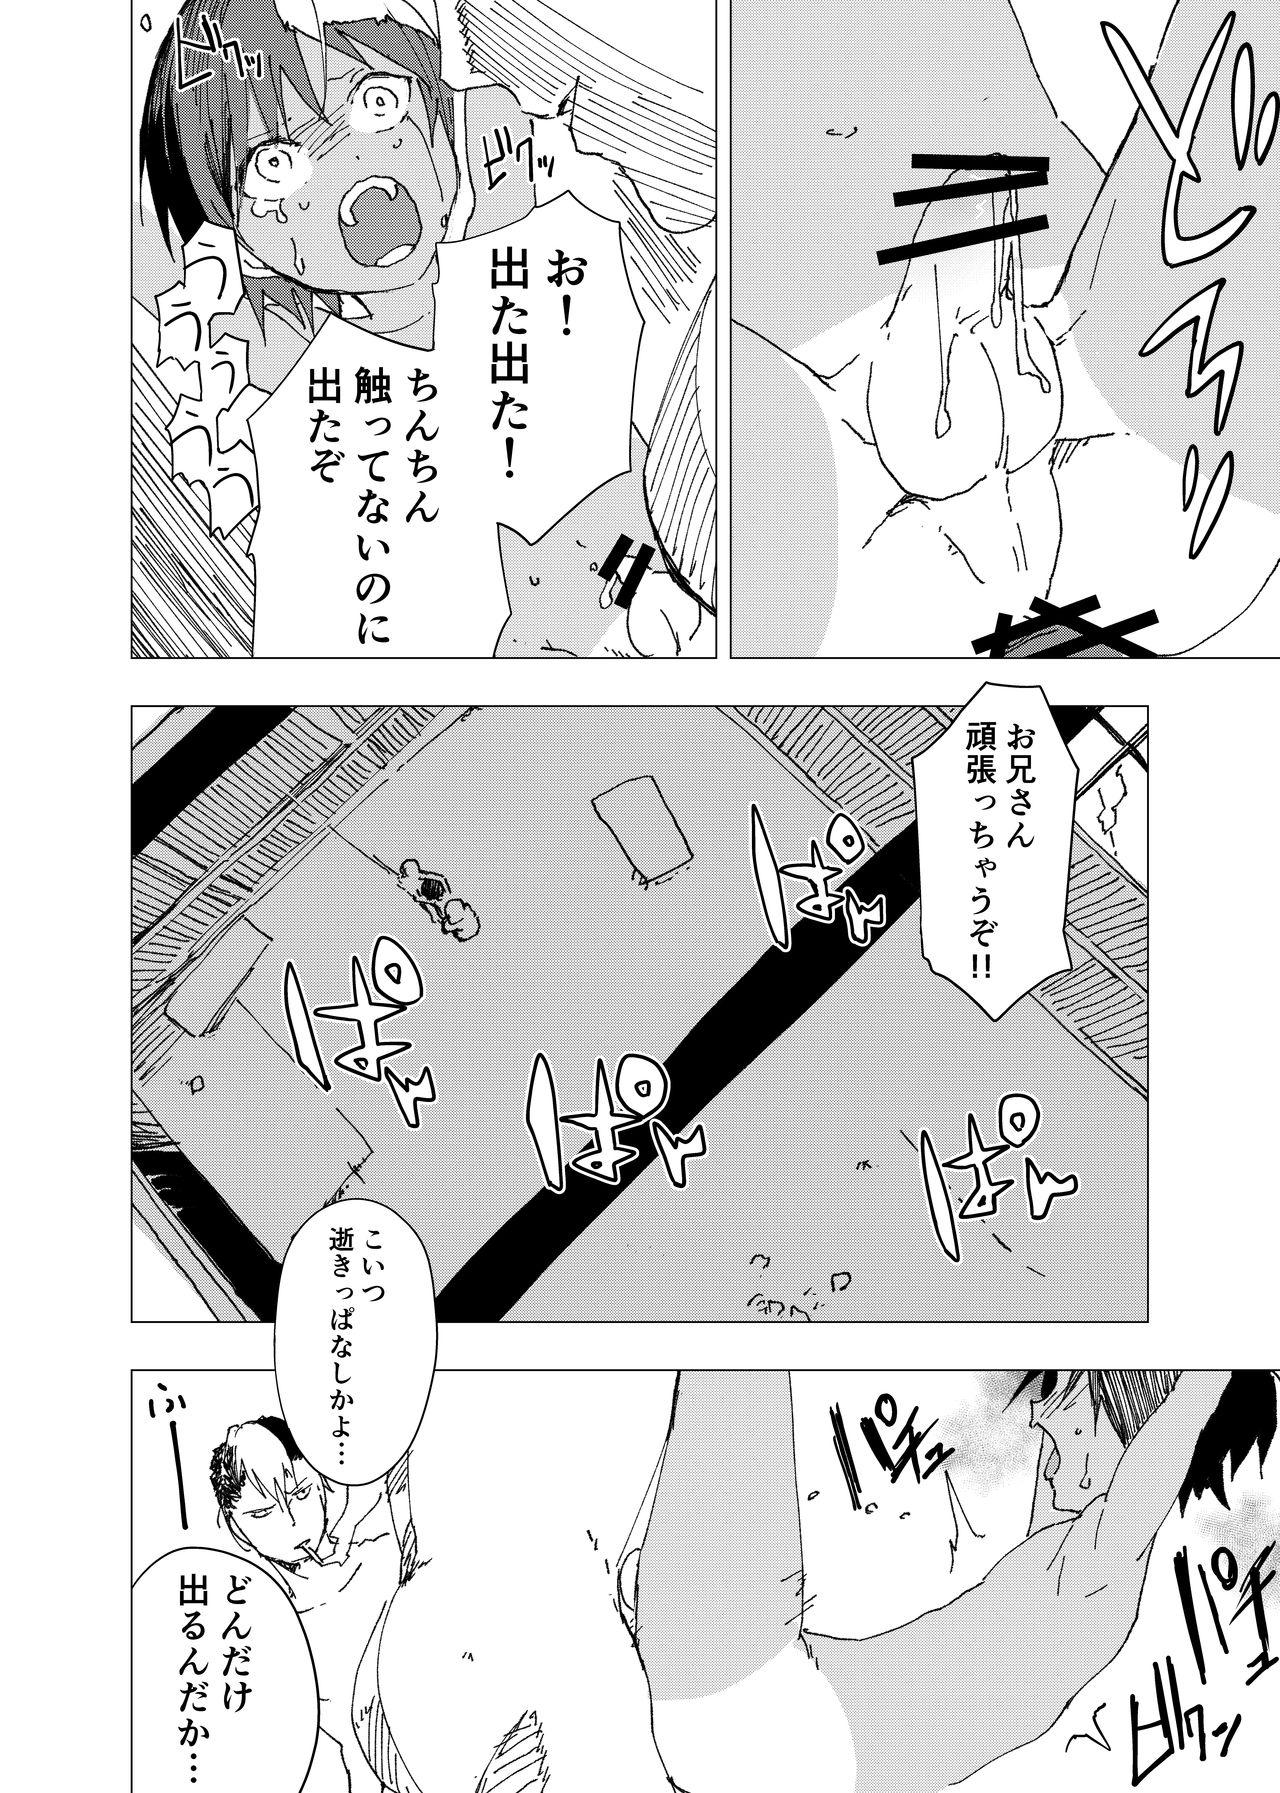 Girl On Girl inaka nouke shounento tokai no zeme shounen no e ro manga 8 - Original Gayemo - Page 24